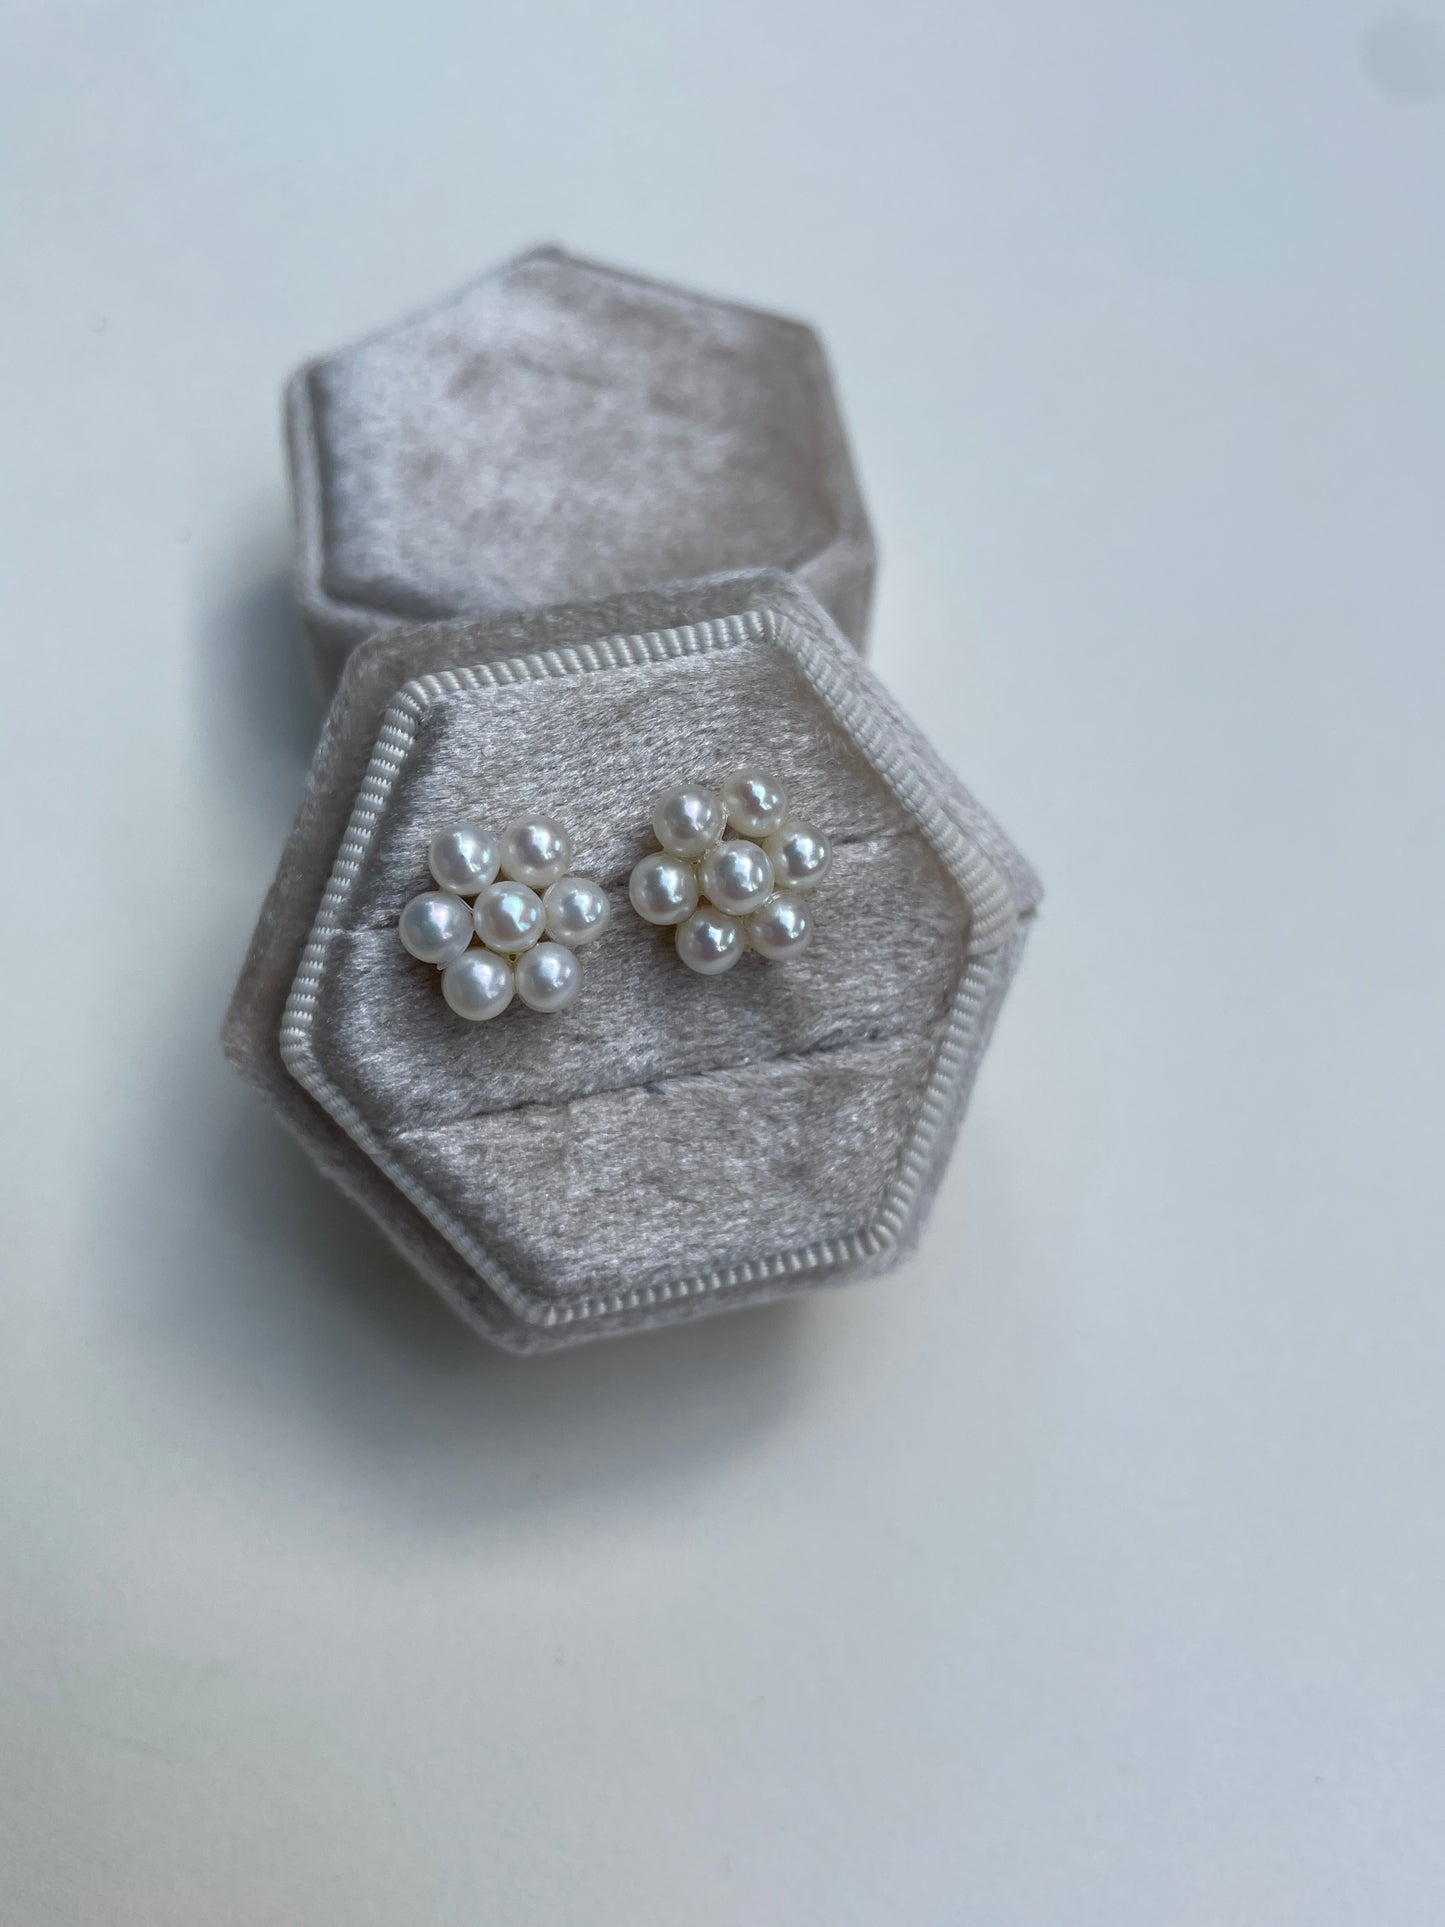 14K Pearl Cluster Earrings